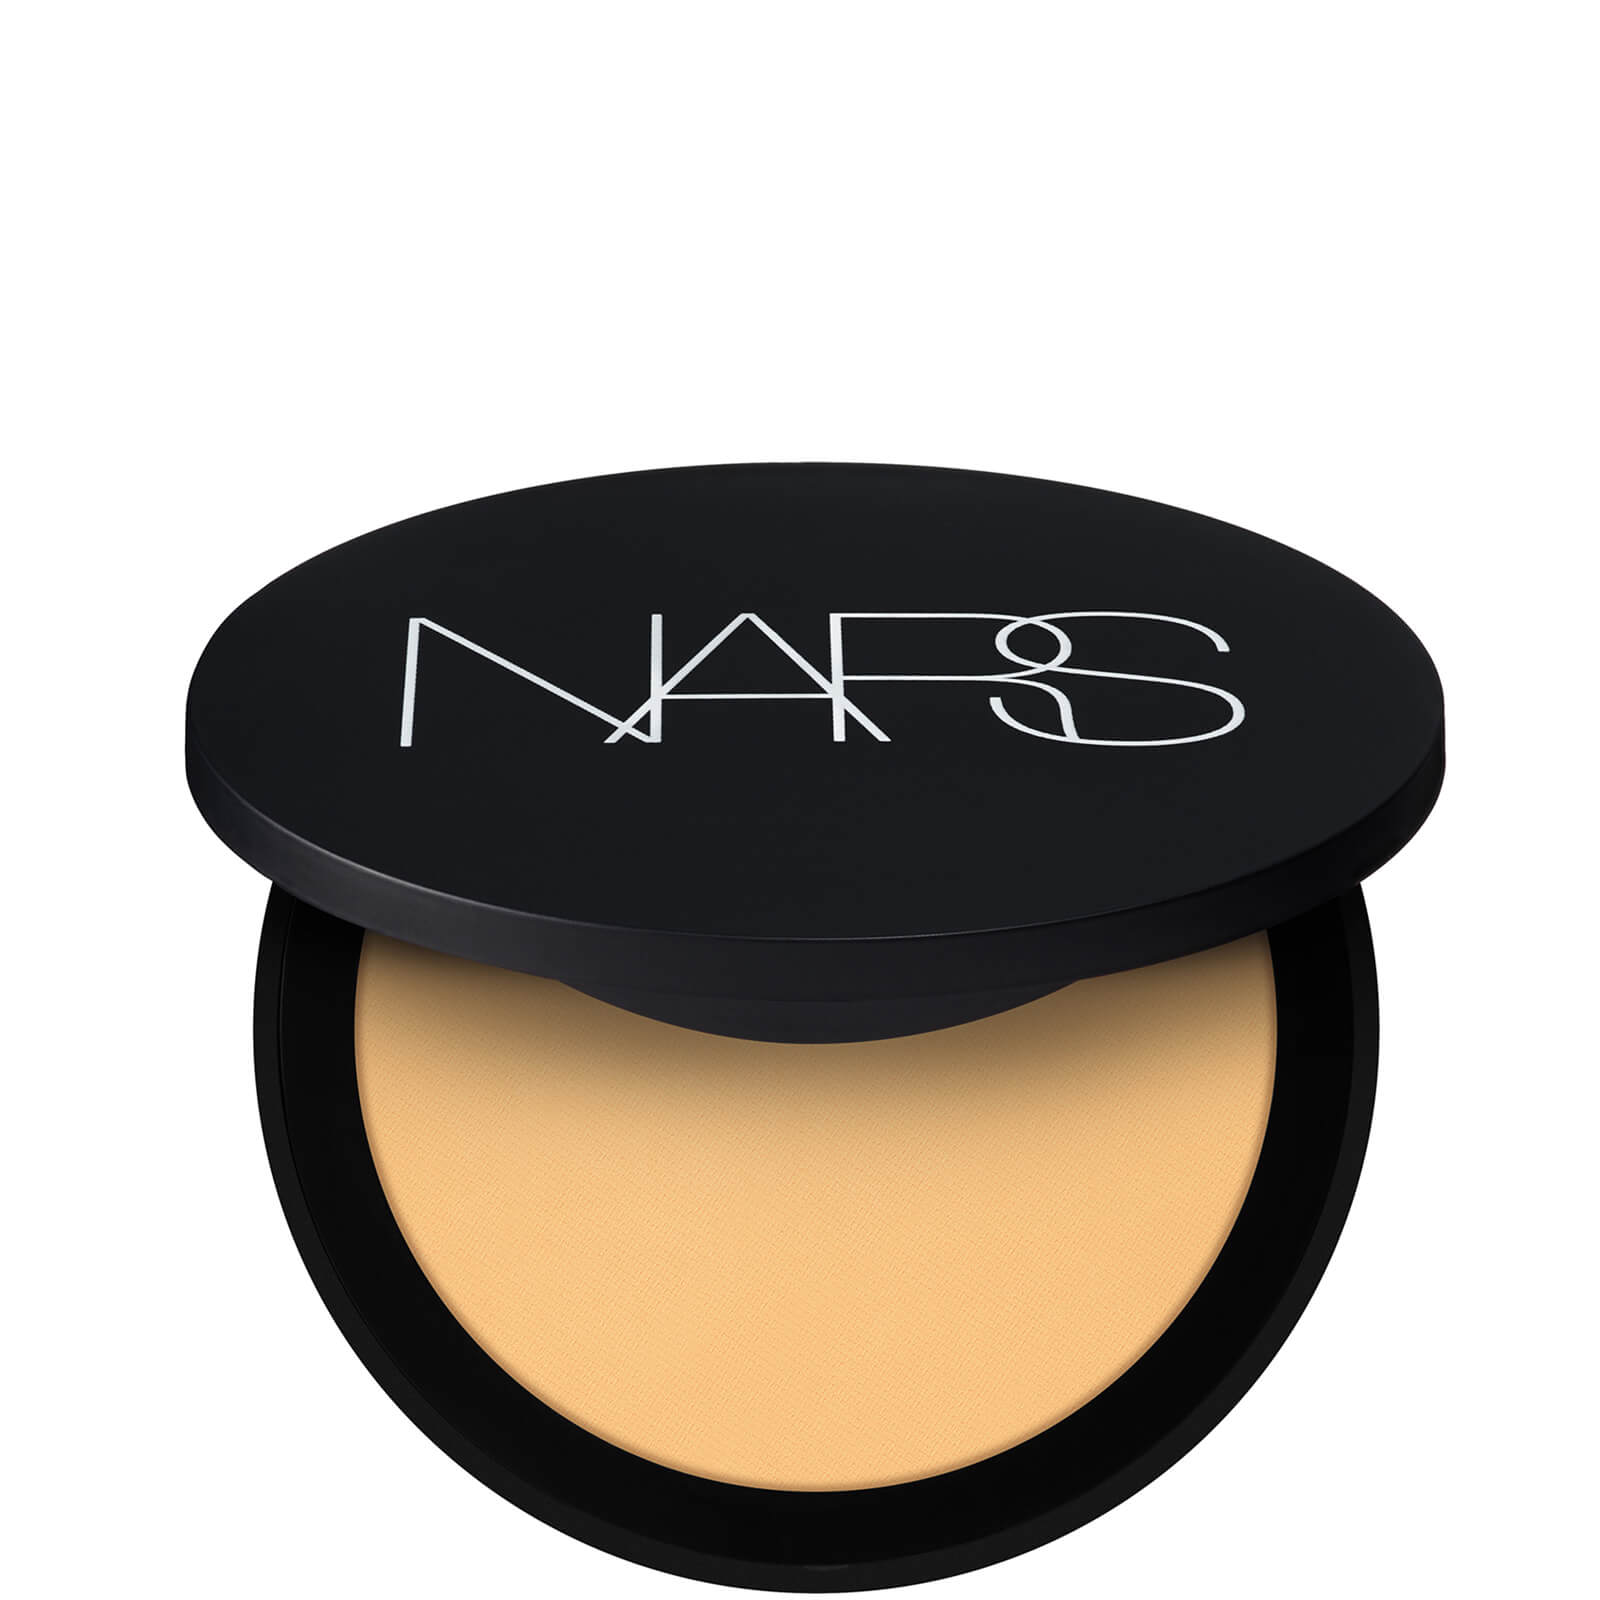 NARS Soft Matte Powder 9g (Various Shades) - Bay